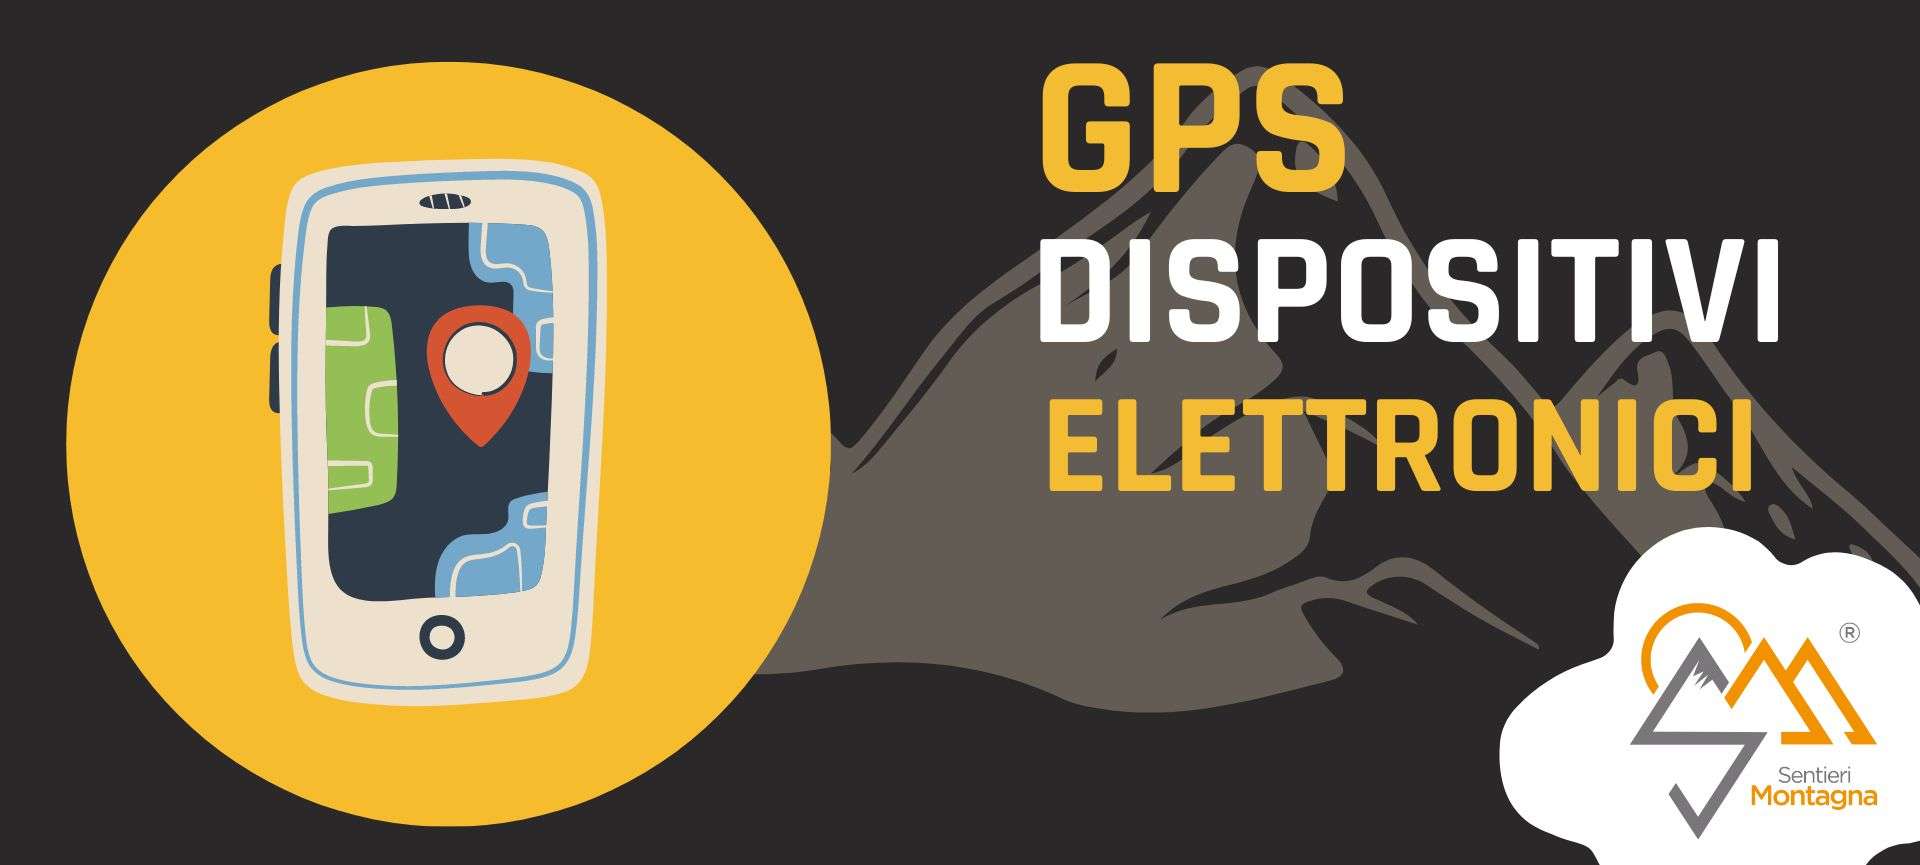 GPS e dispositivi elettronici